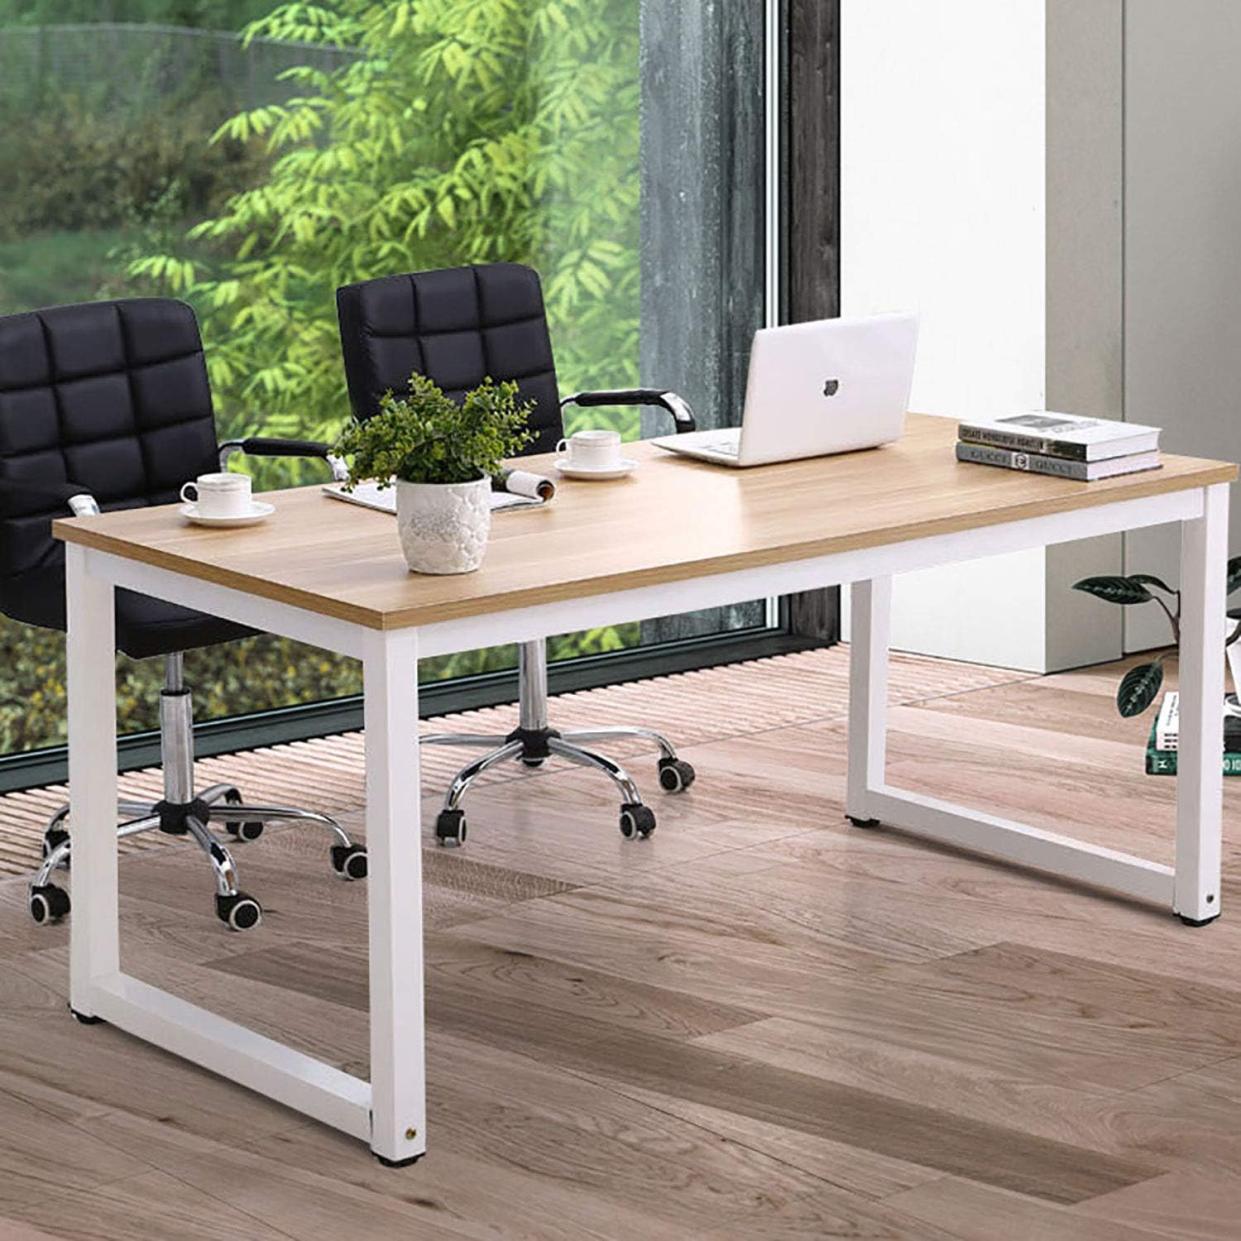 Standing Desks: A Healthier Way to Work?